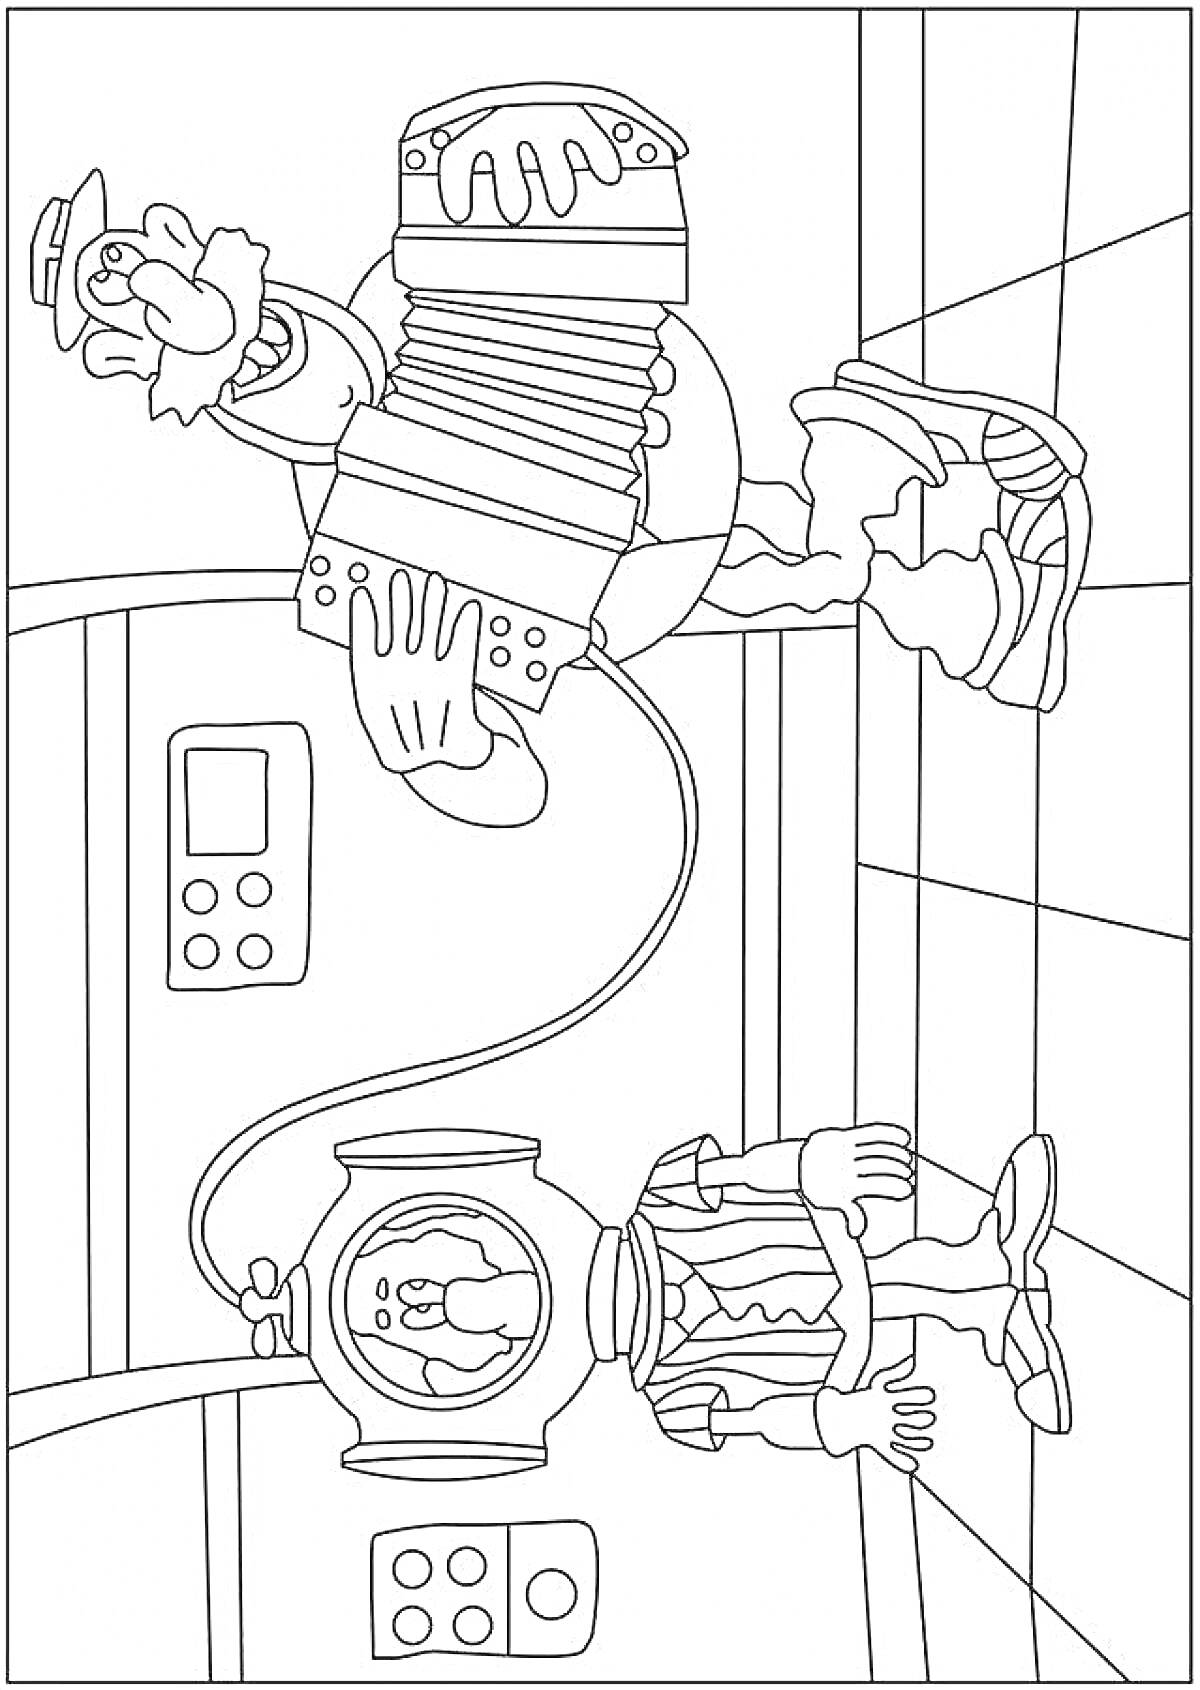 Раскраска Капитан Врунгель и аккордеонщик с водолазом в подводной лодке